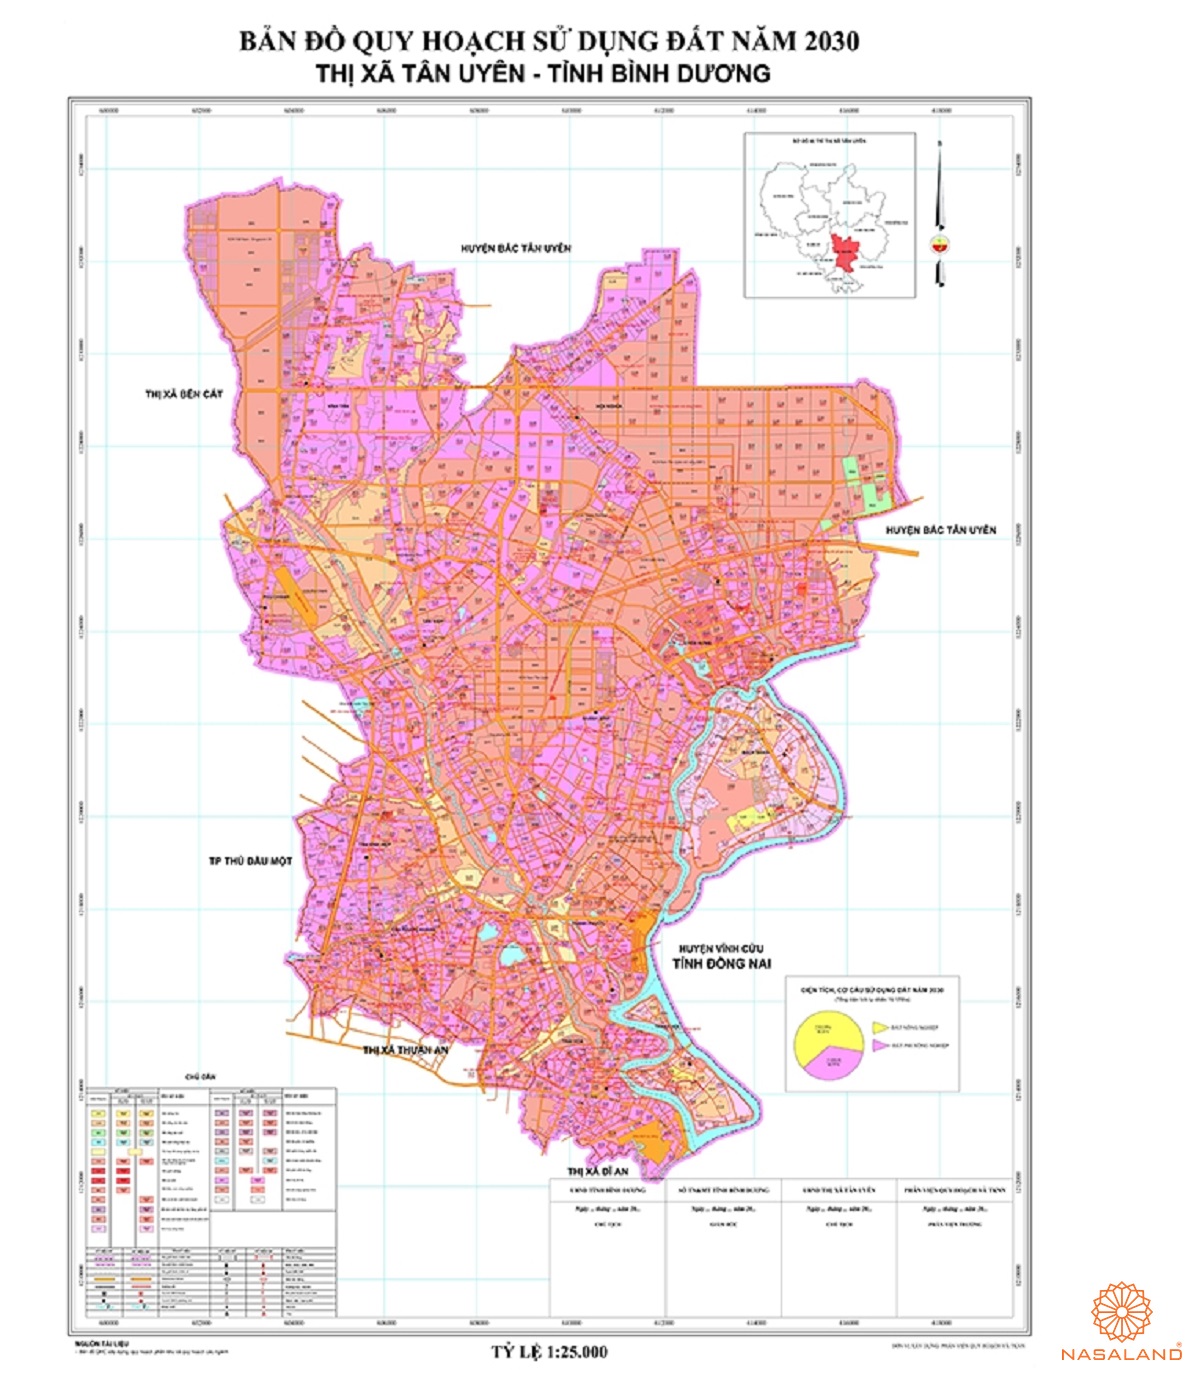 Quy hoạch sử dụng đất Thị xã Tân Uyên thể hiện trên bản đồ quy hoạch phân khu tỷ lệ 1/2000 của Tỉnh Bình Dương